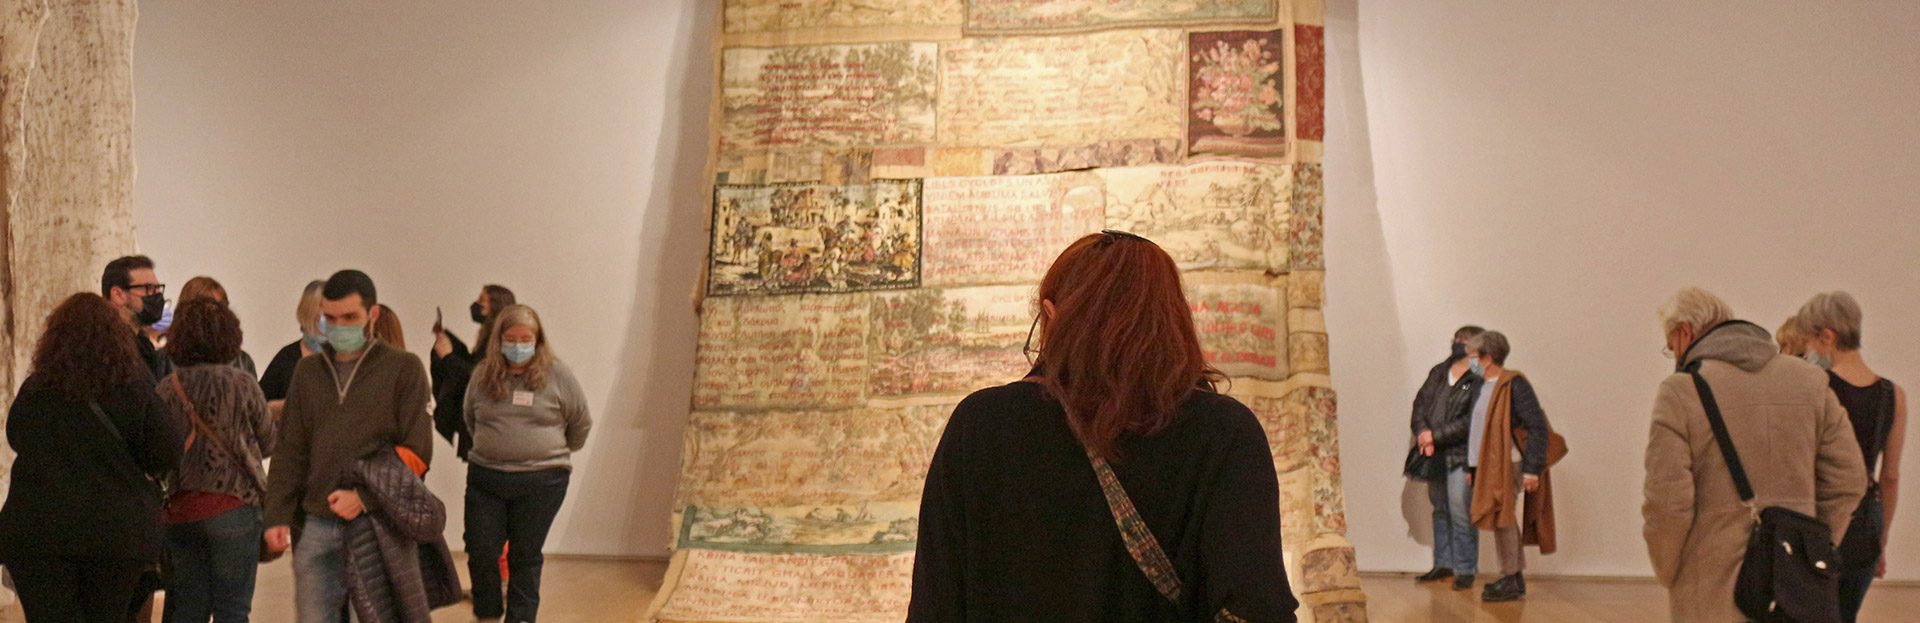 Charla-encuentro con Verónica Rossi, en el marco de la exhibición “Tejer las piedras” en el MALBA